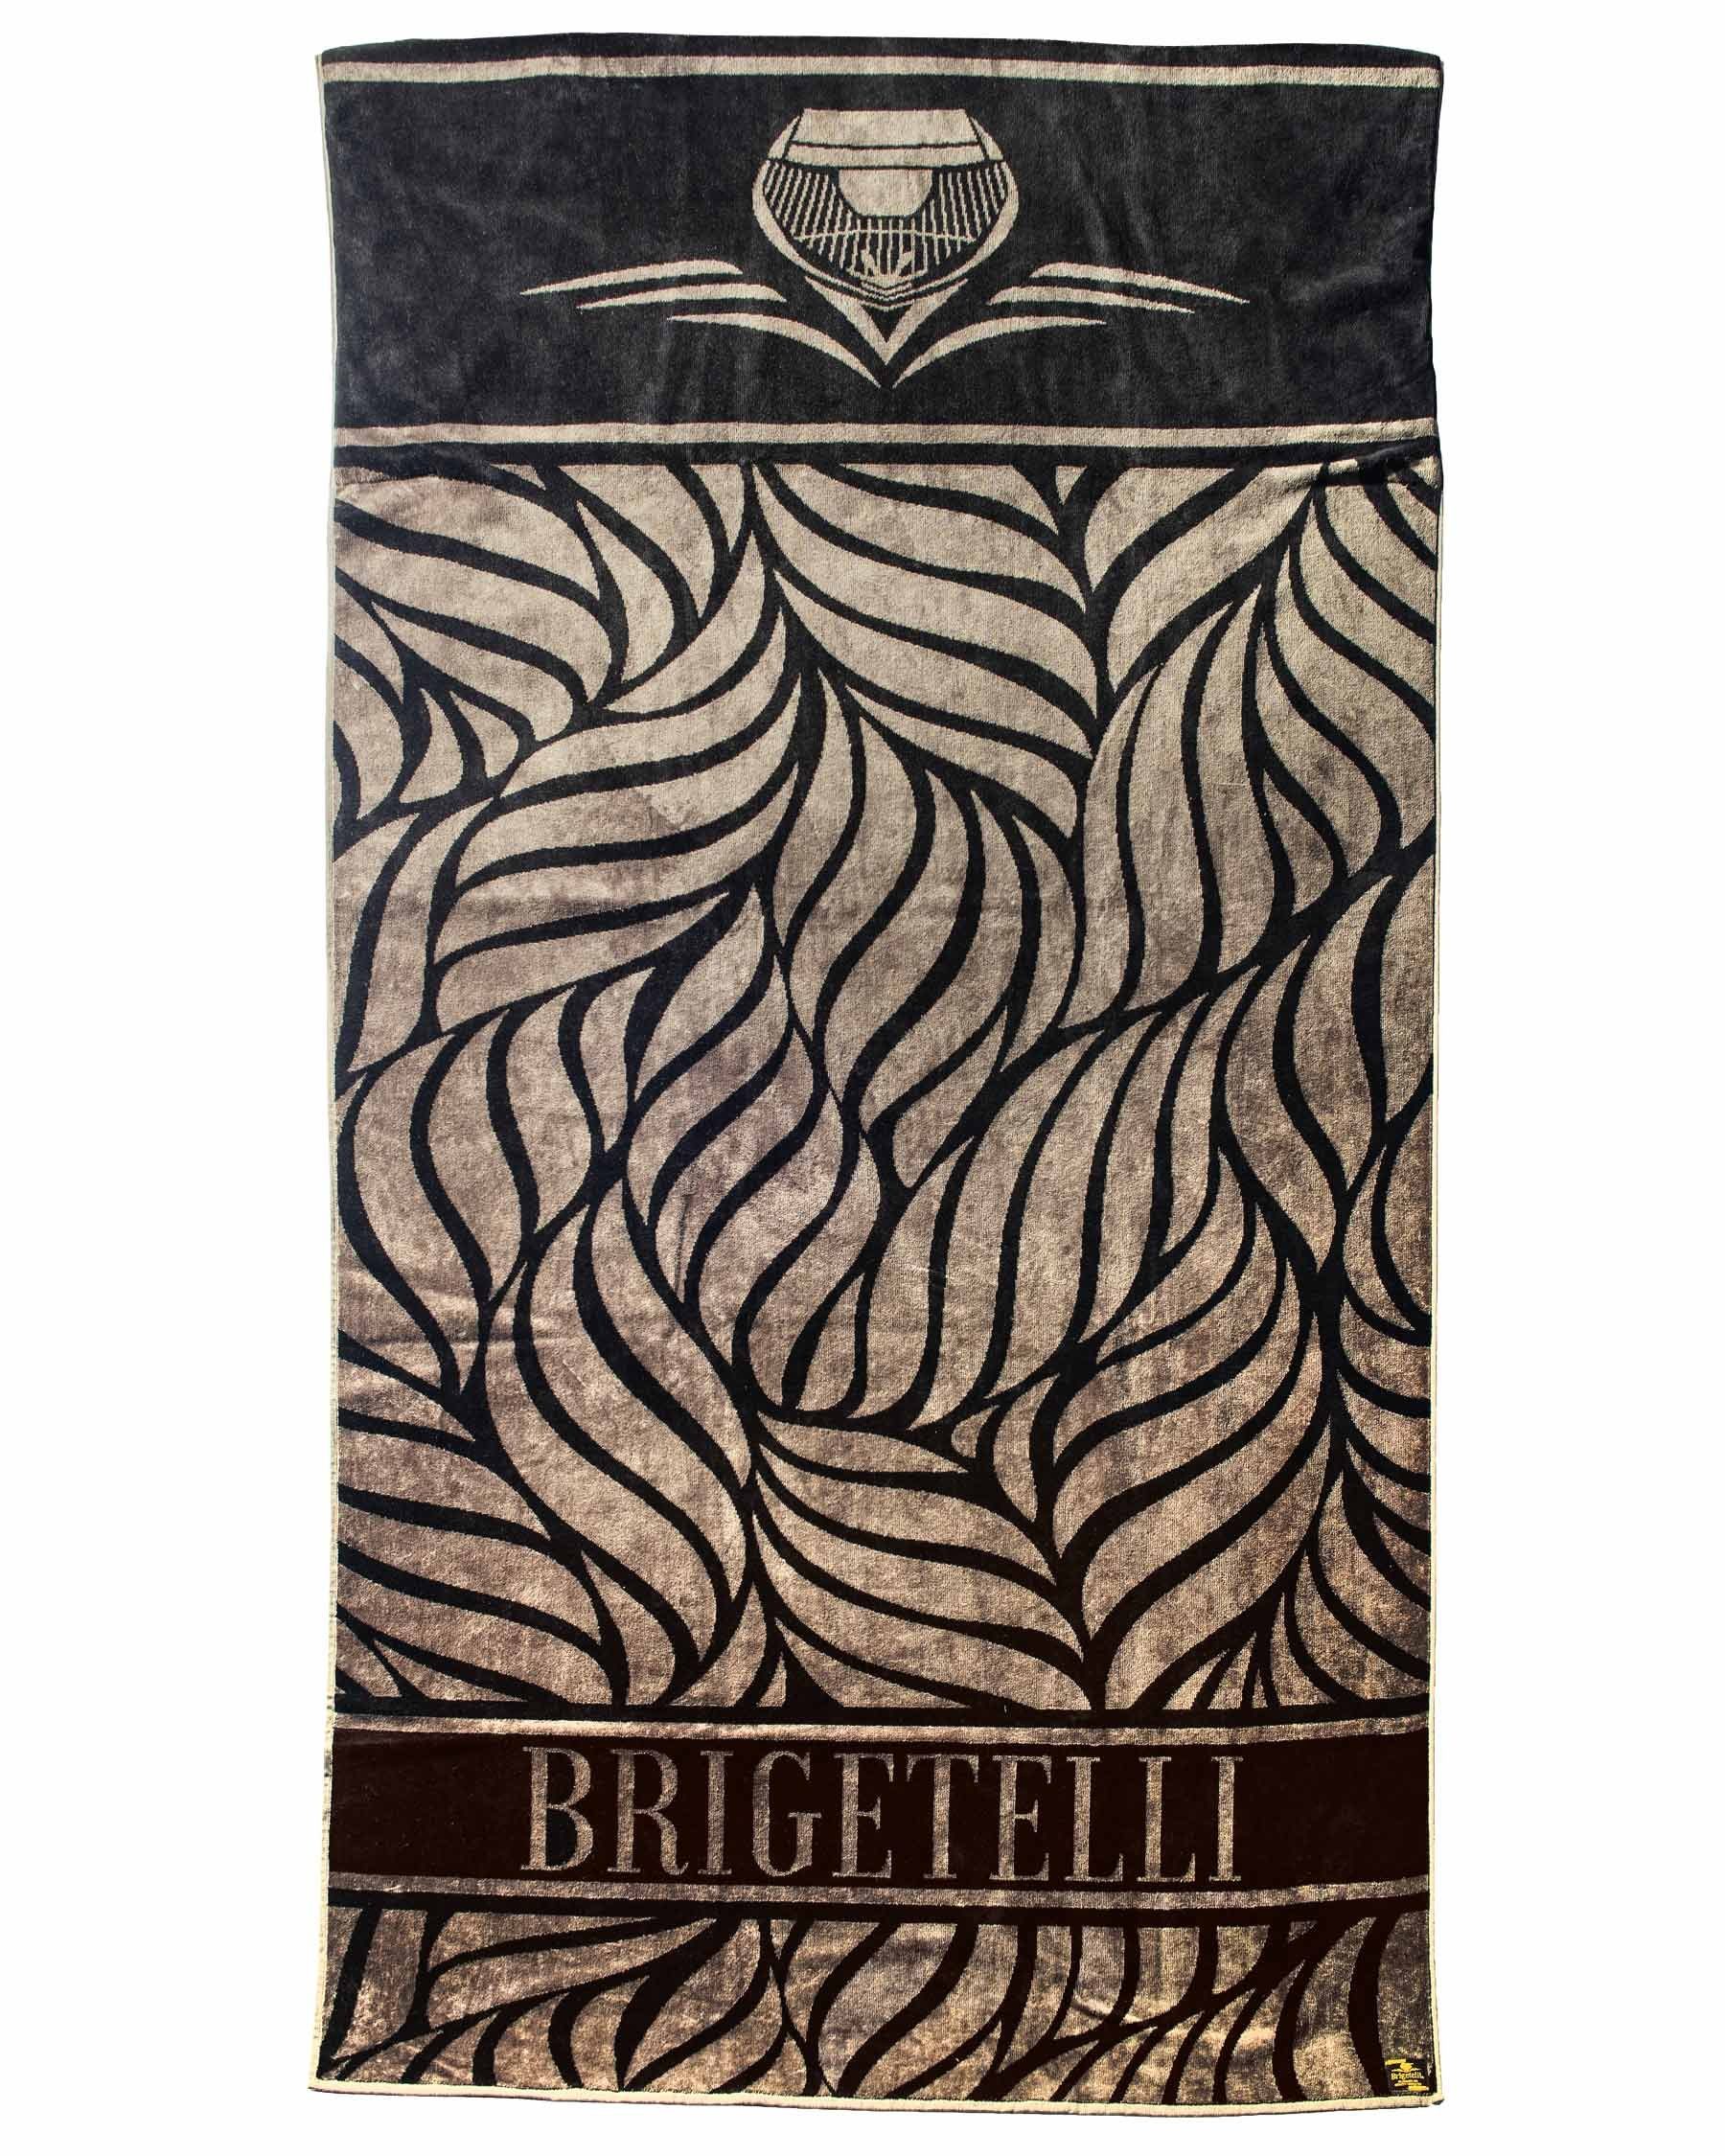 Brigetelli (1- Strandtuch, eingebaute Tasche Tasche für St), Black & Label, für Strandtuch Badetuch XXL Geldbörse - Luftkopfkissen Brigetelli Handy,